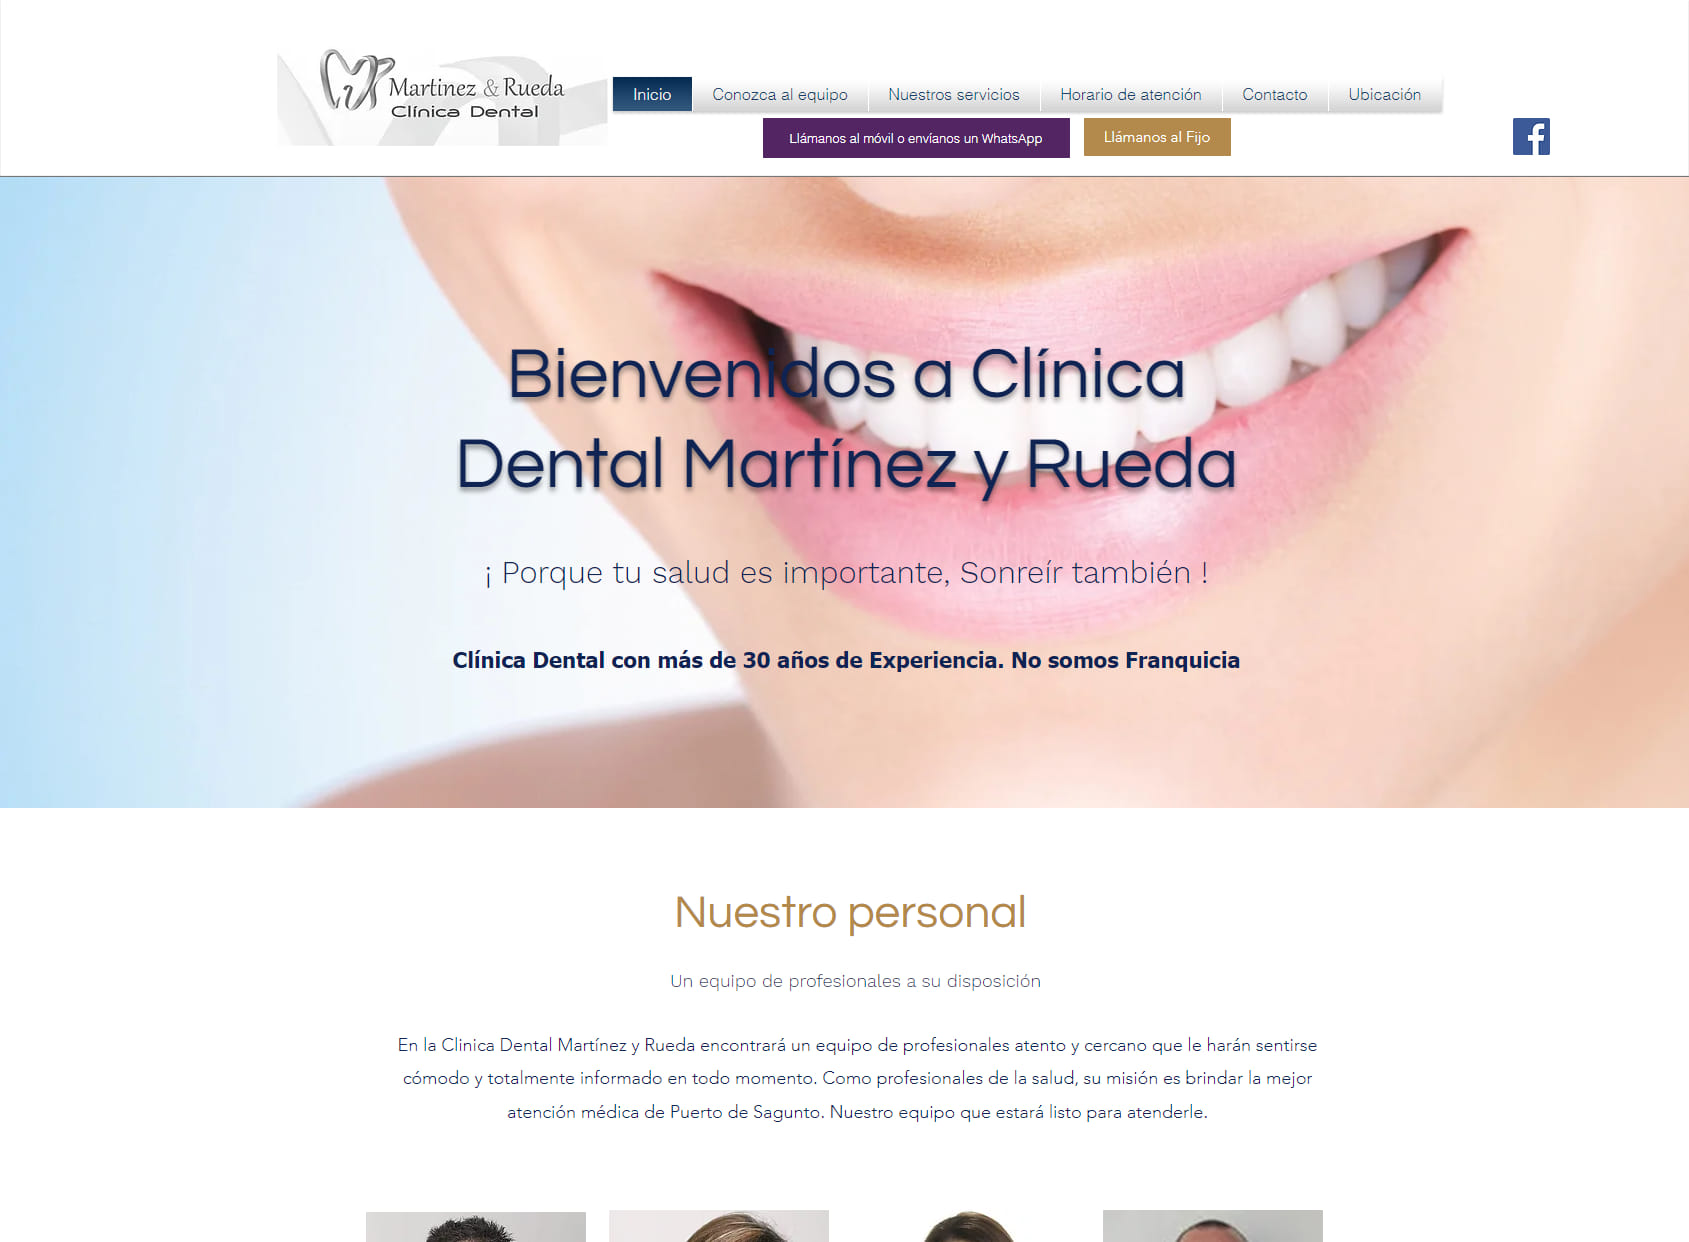 Martinez & Rueda Clinica Dental